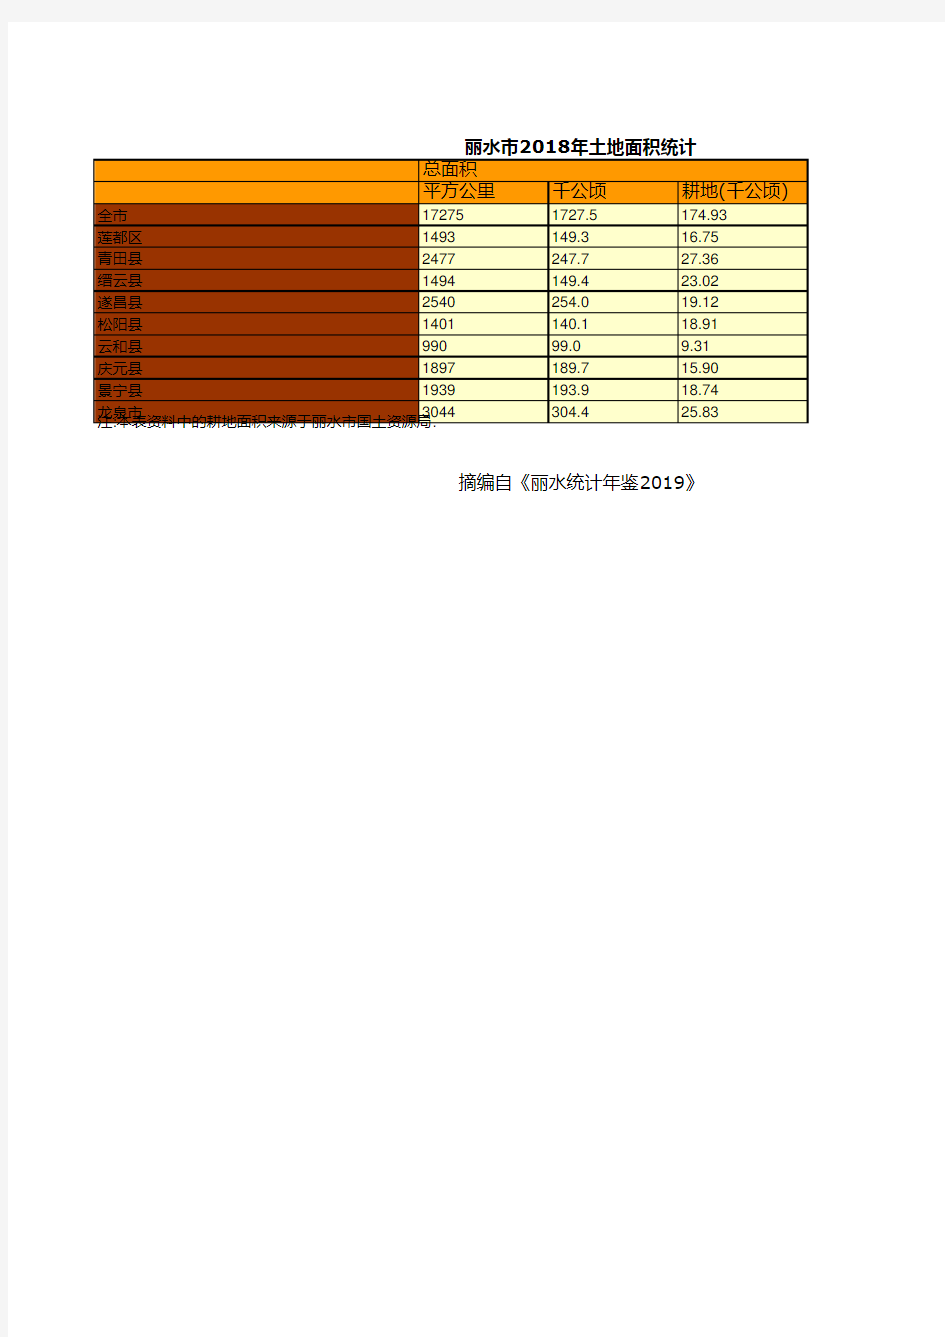 浙江丽水市社会经济发展统计年鉴数据：2018年土地面积统计